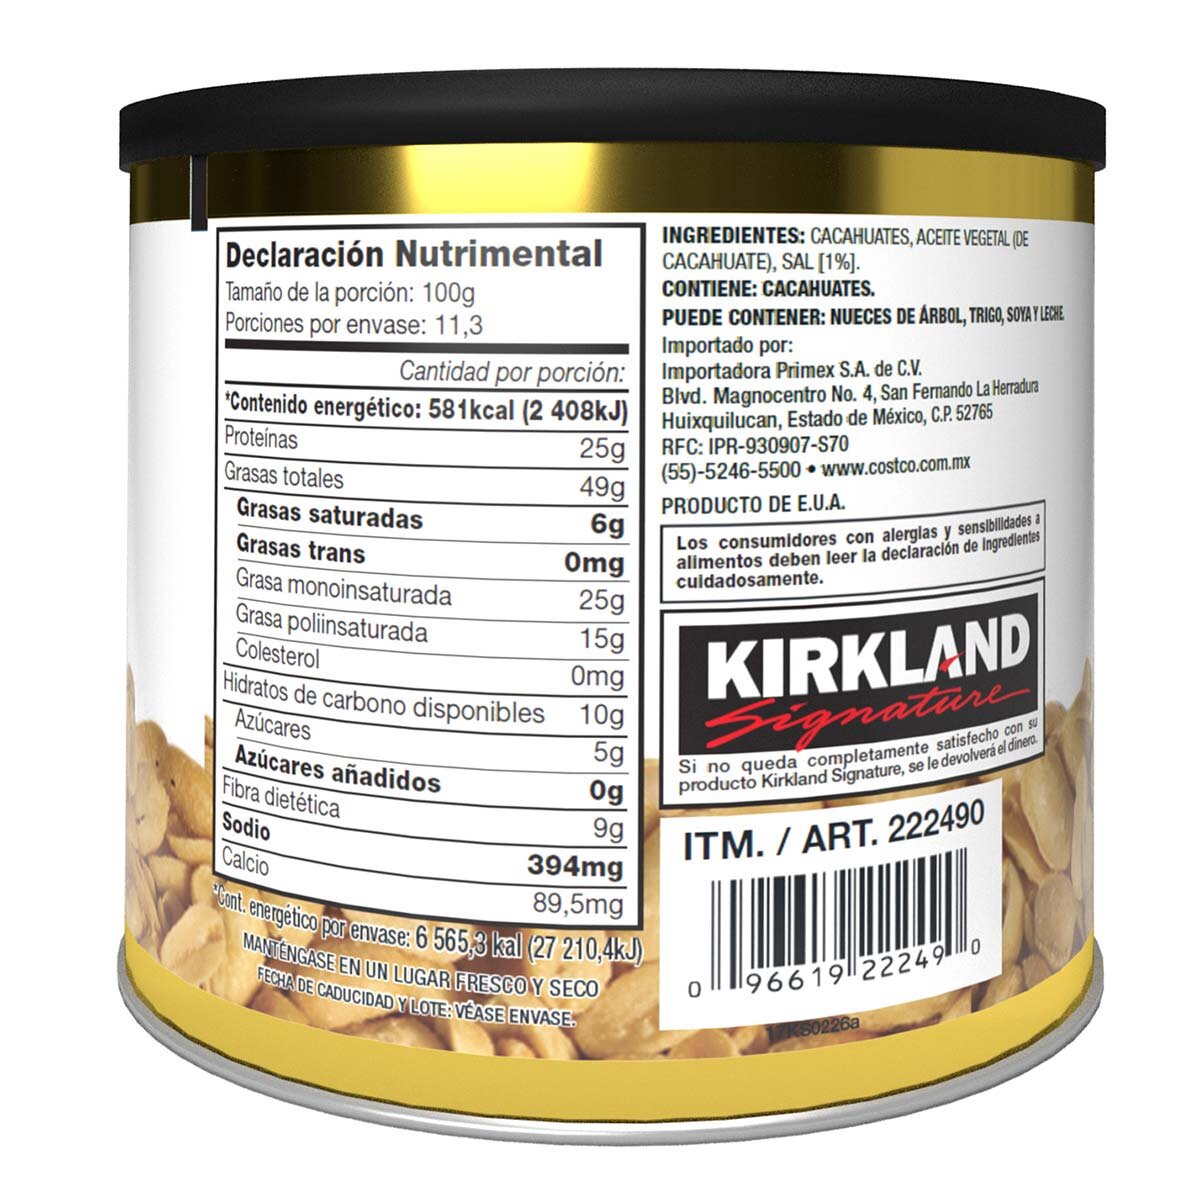 Kirkland Signature Cacahuates Tostados y Salados 1.13 kg